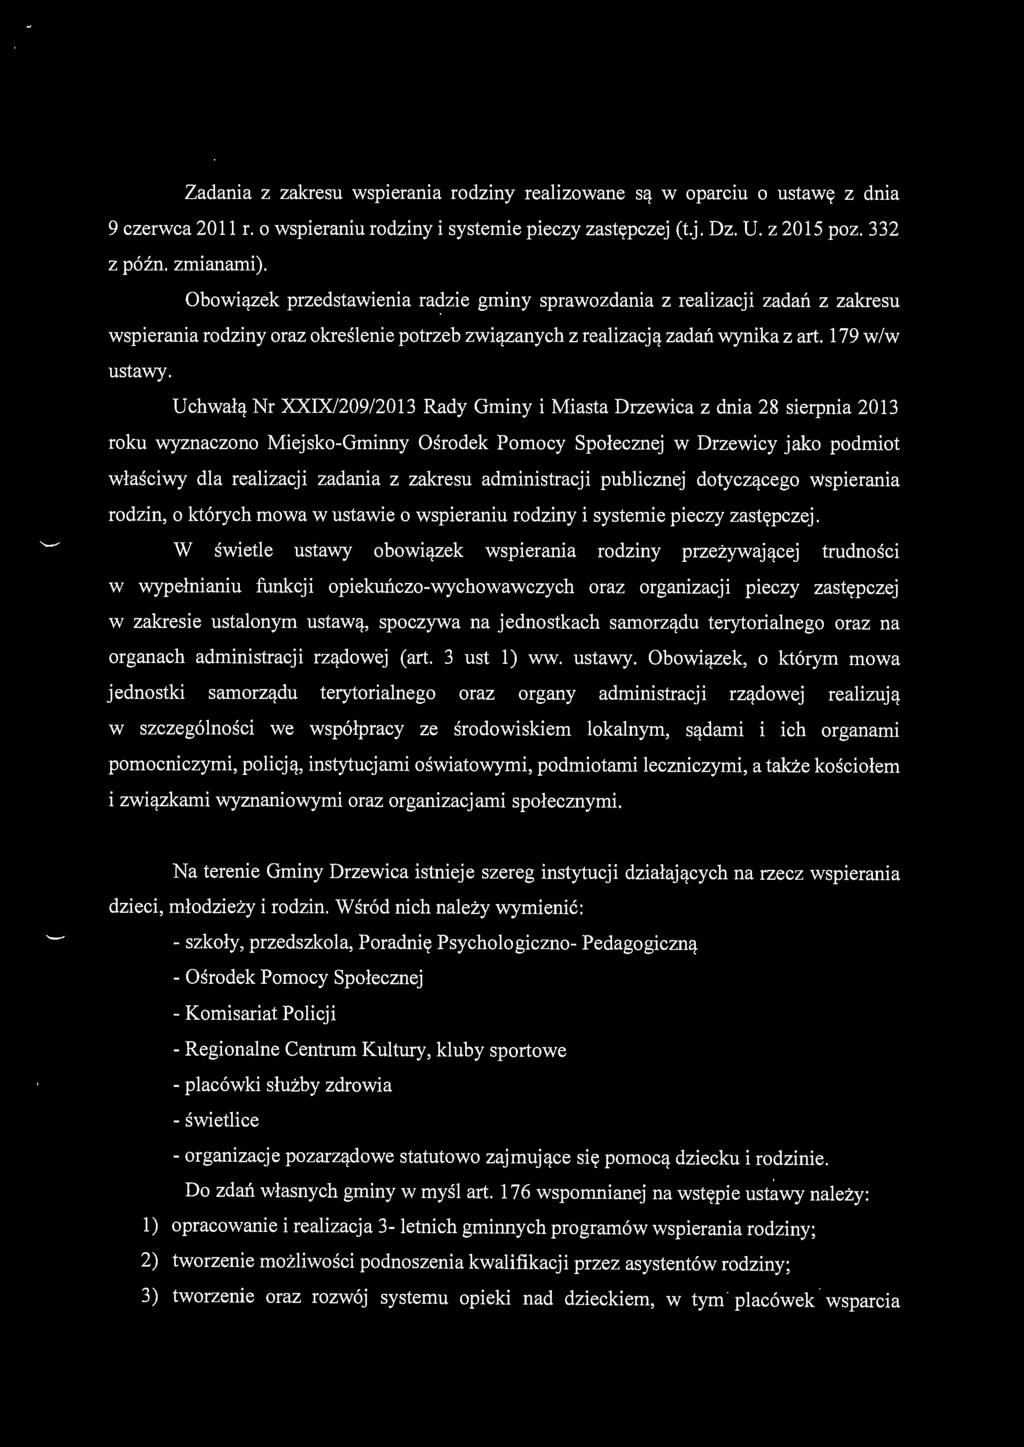 Uchwałą Nr XXIX/209/2013 Rady Gminy i Miasta Drzewica z dnia 28 sierpnia 2013 roku wyznaczono Miejsko-Gminny Ośrodek Pornocy Społecznej w Drzewicy jako podmiot właściwy dla realizacji zadania z